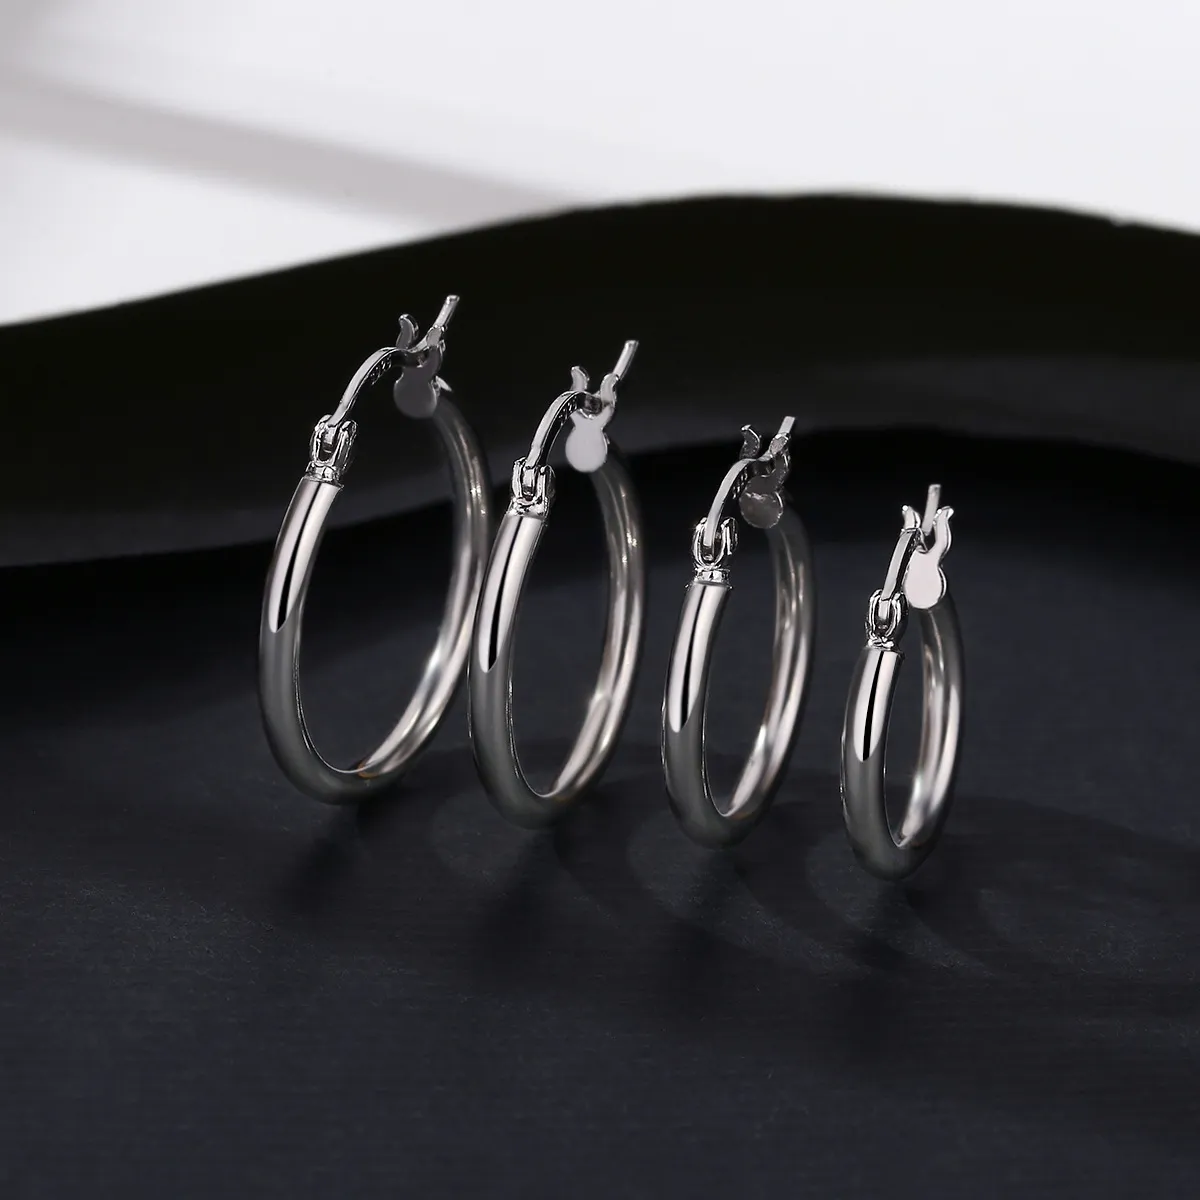 Nuovo design classico orecchino s925 orecchini pendenti in argento stile europeo 16mm18mm20mm22mm quattro dimensioni regalo gioielli orecchini donna